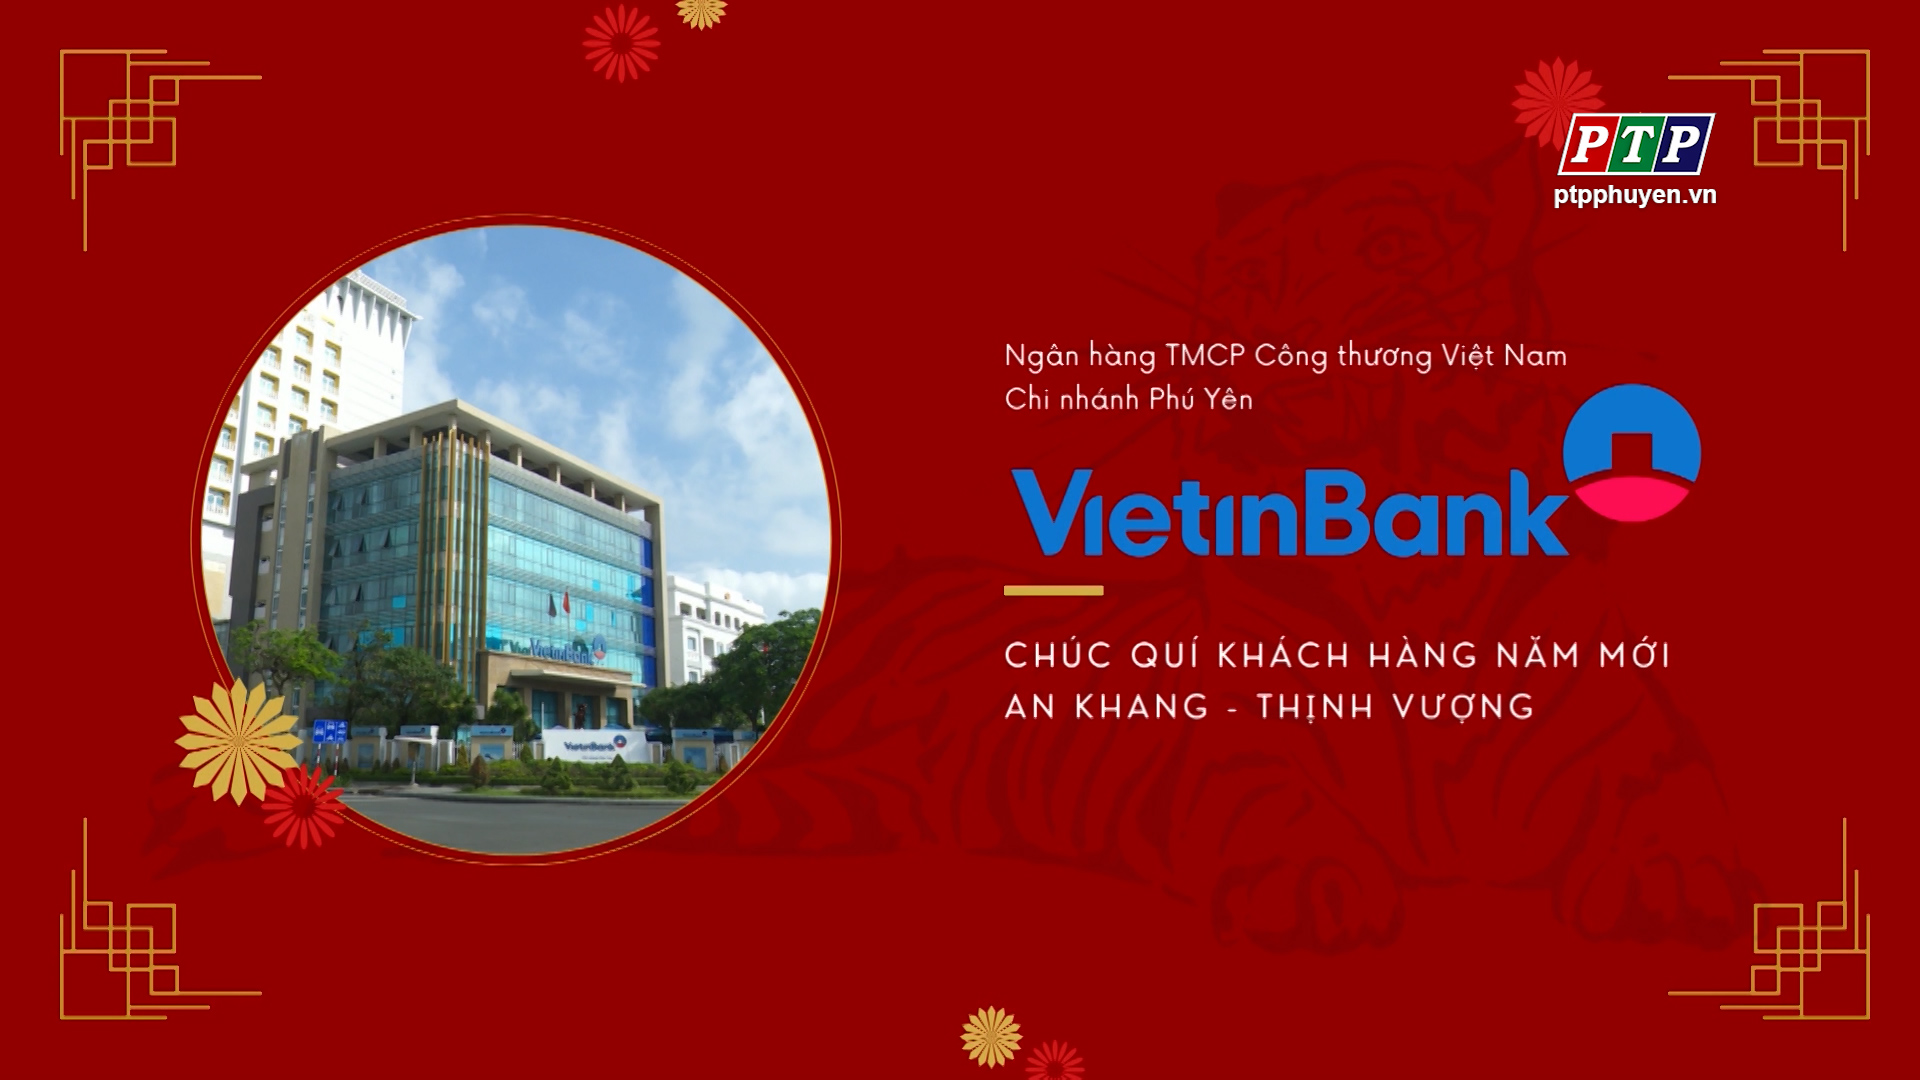 Vietinbank Phú Yên Chúc Mừng Năm Mới